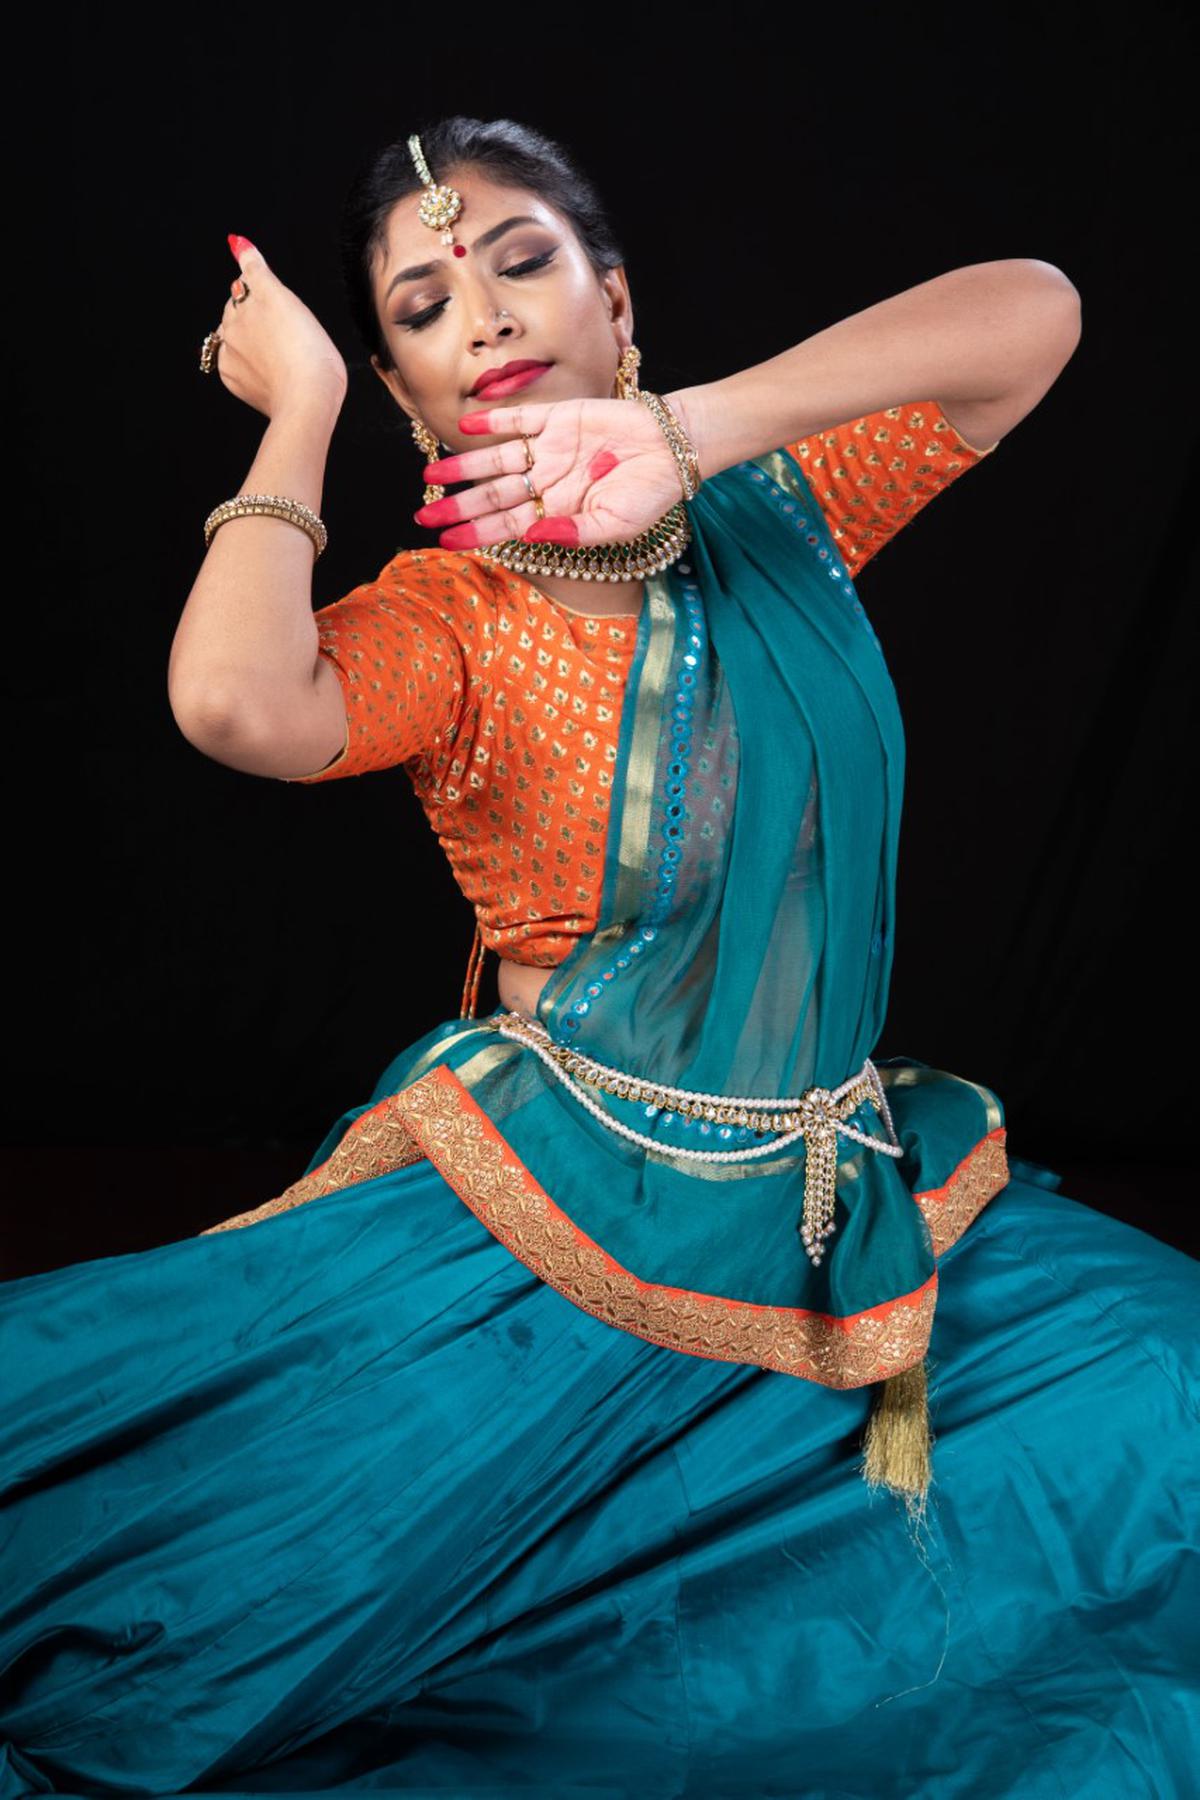 Sangita Chatterjee